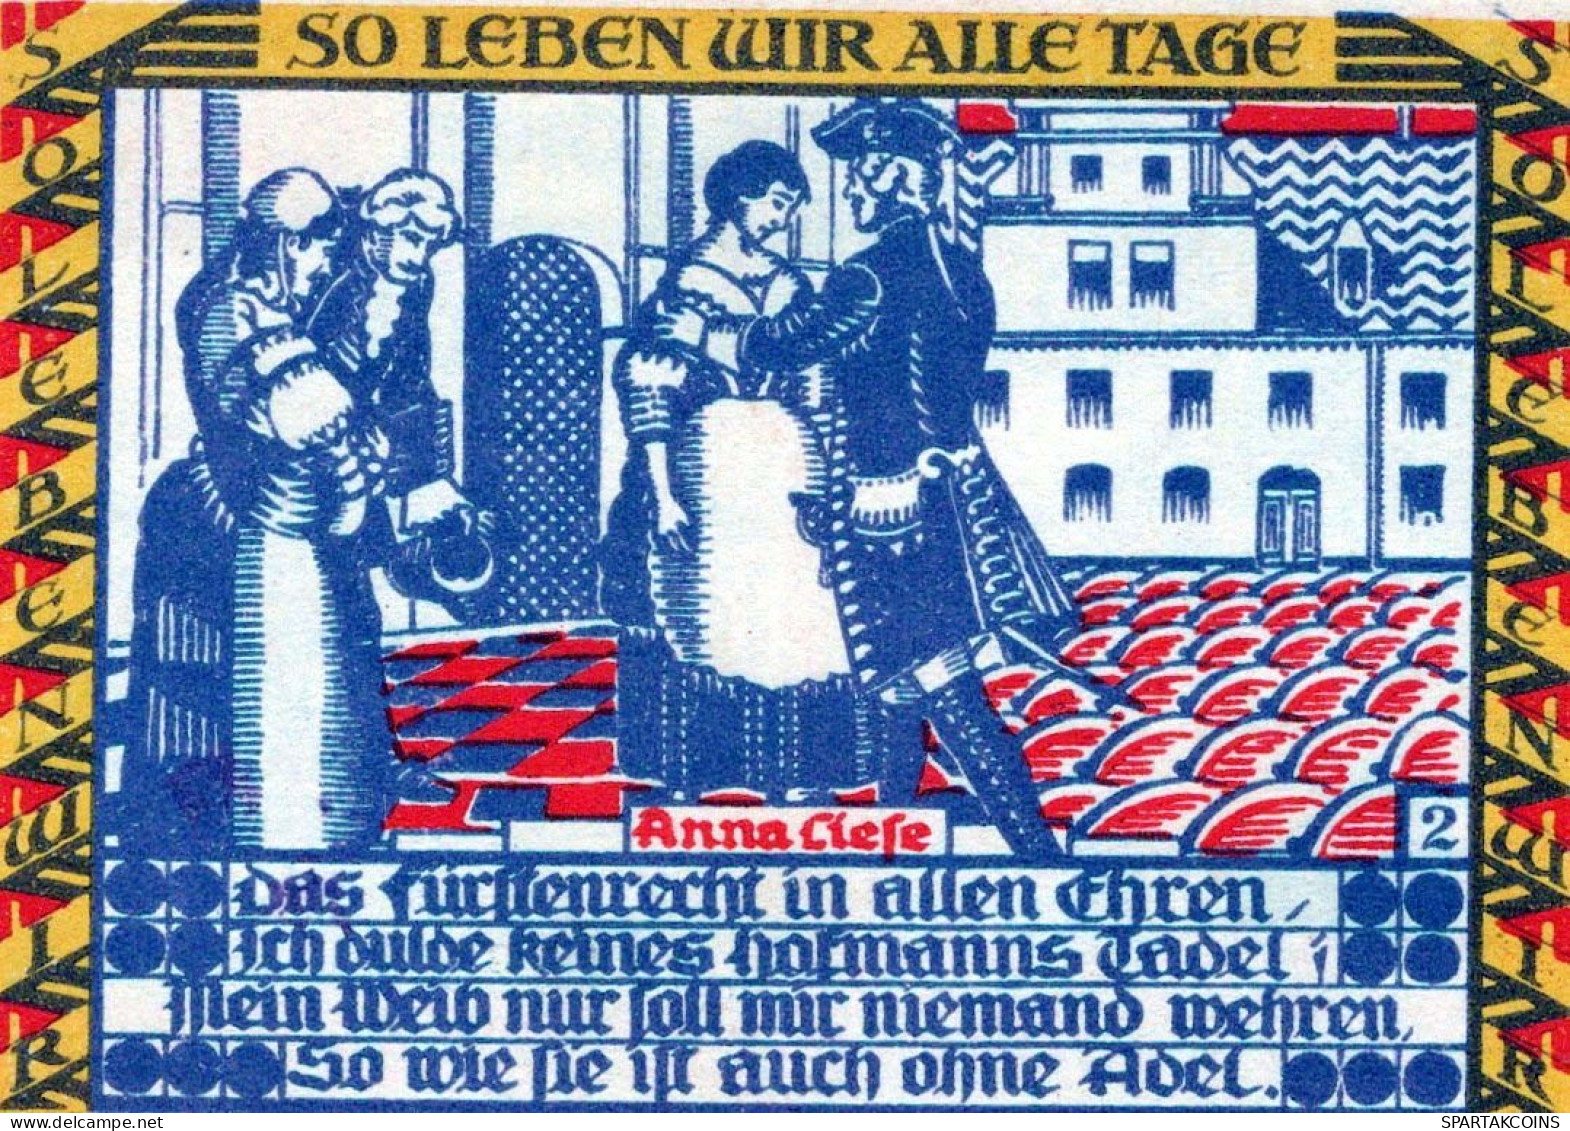 50 PFENNIG 1921 Stadt DESSAU Anhalt DEUTSCHLAND Notgeld Banknote #PD417 - [11] Lokale Uitgaven